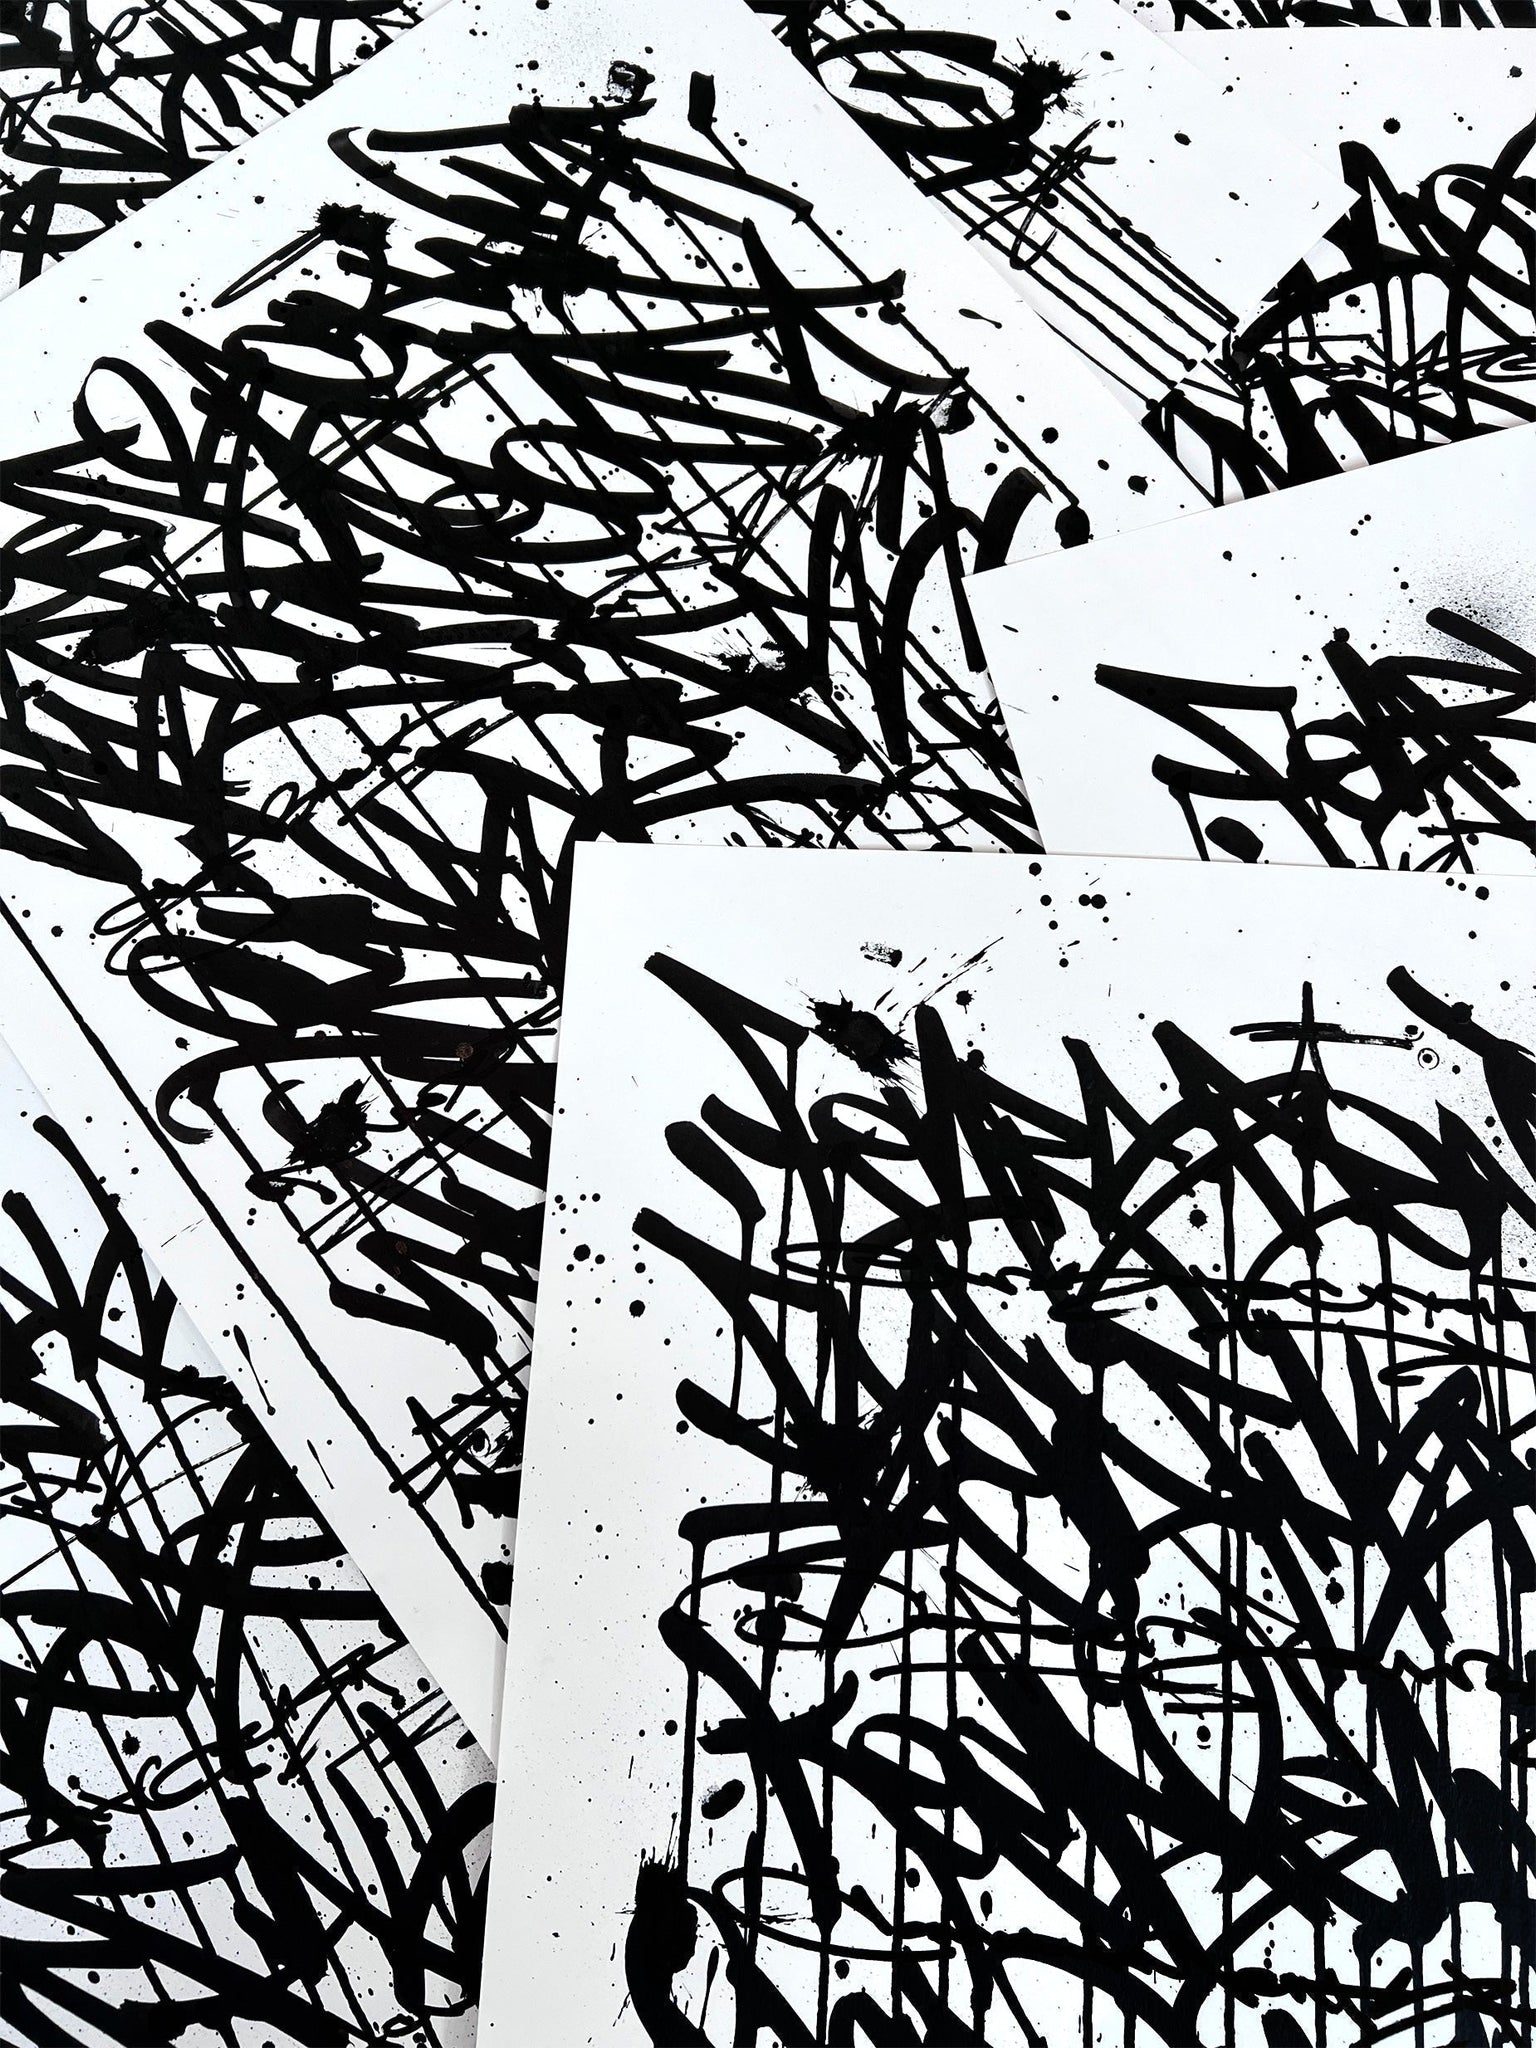 Fear Less Live More 06 - original on paper 50 x 70 cm